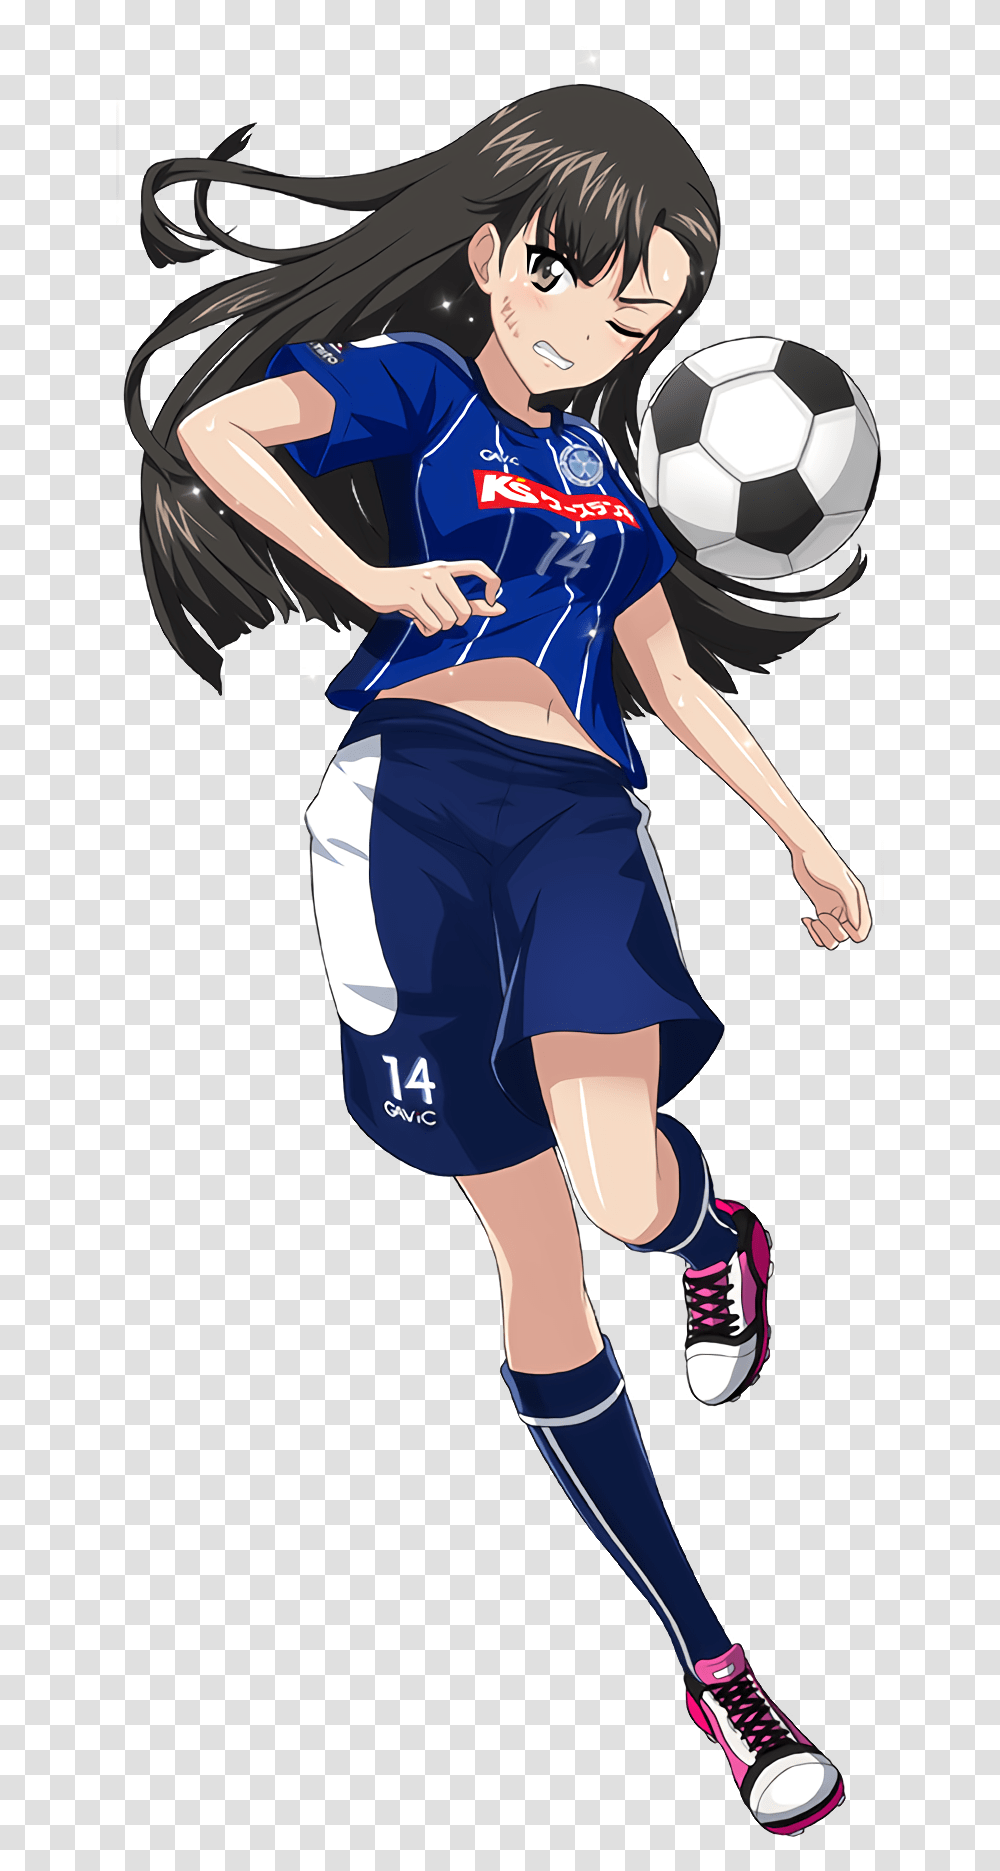 Anime Girl Playing Soccer Download Anime Girl Playing Soccer, Person, Shorts, Soccer Ball Transparent Png